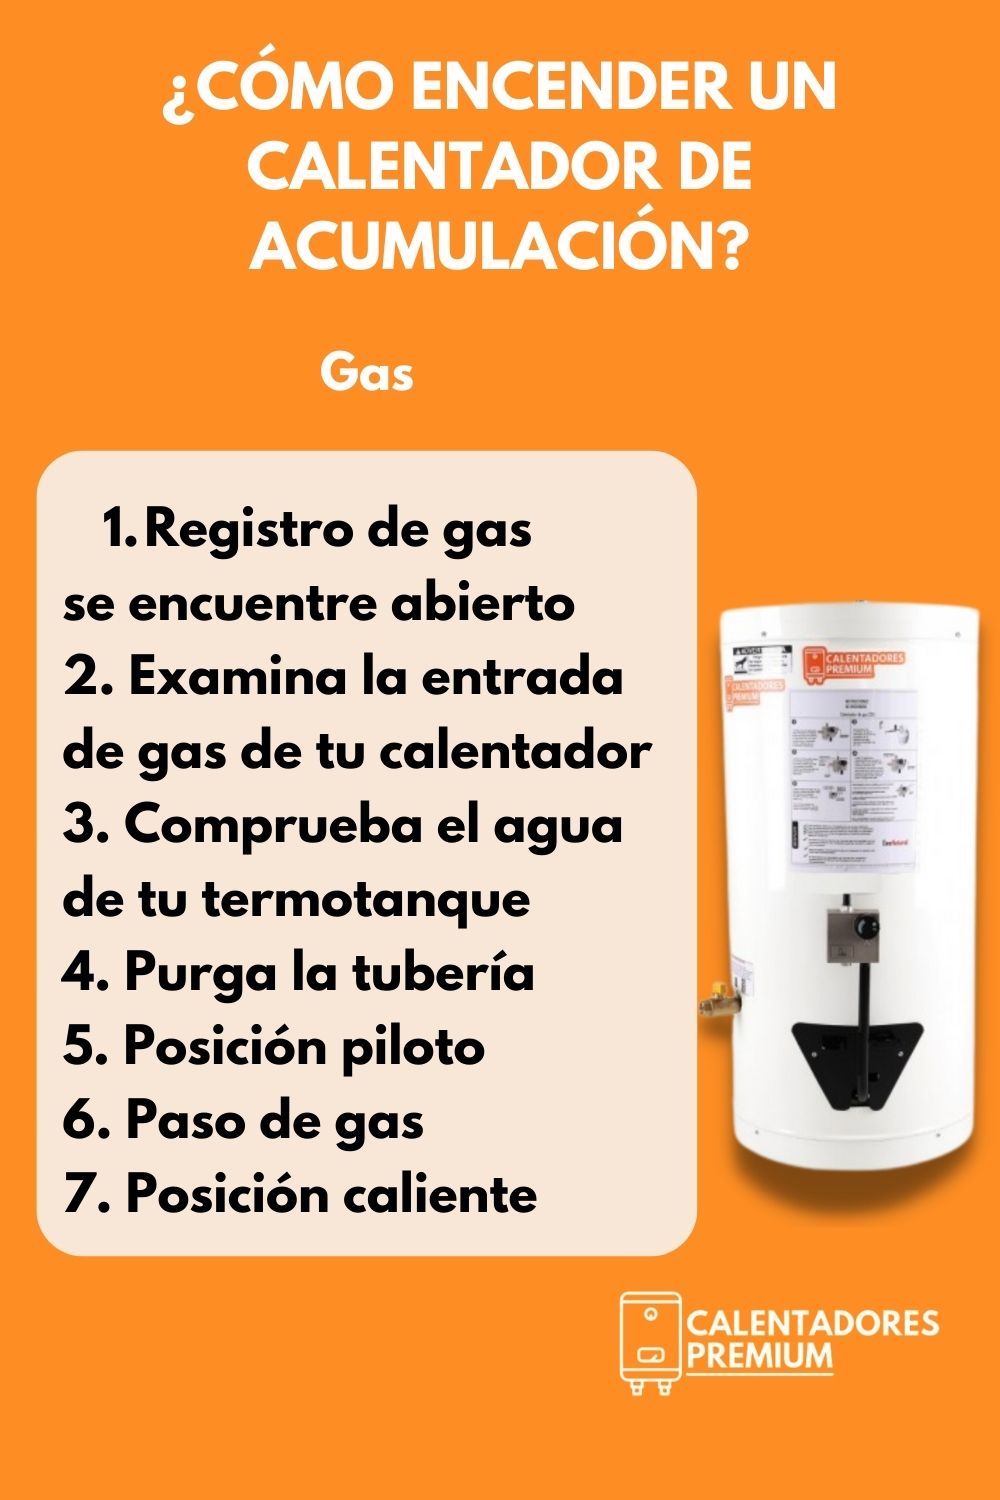 Como-encender-un-calentador-de-acumulacion-calentadorespremium-colombia-calentadores-premium-01